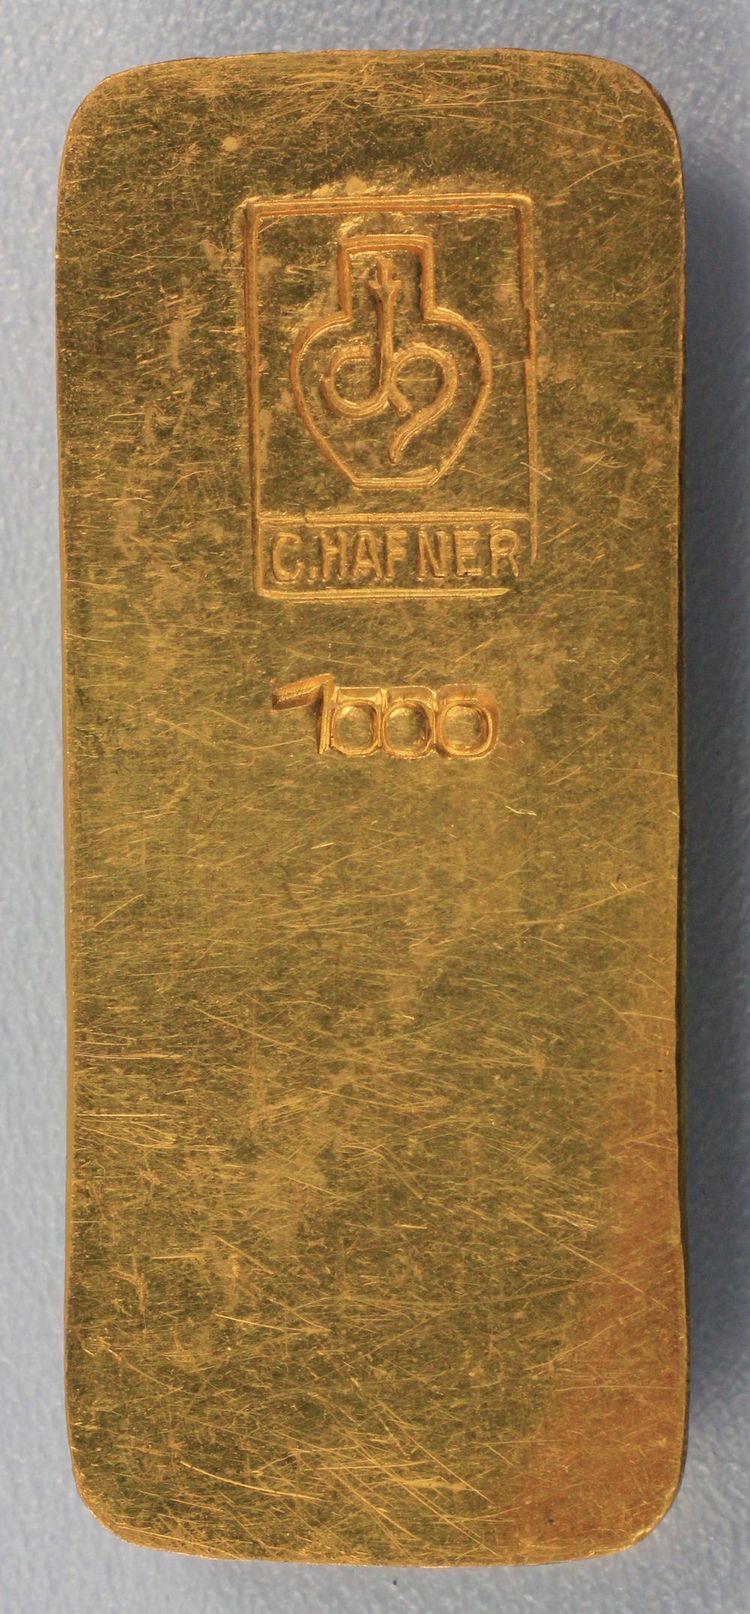 100g Goldbarren C.Haffner